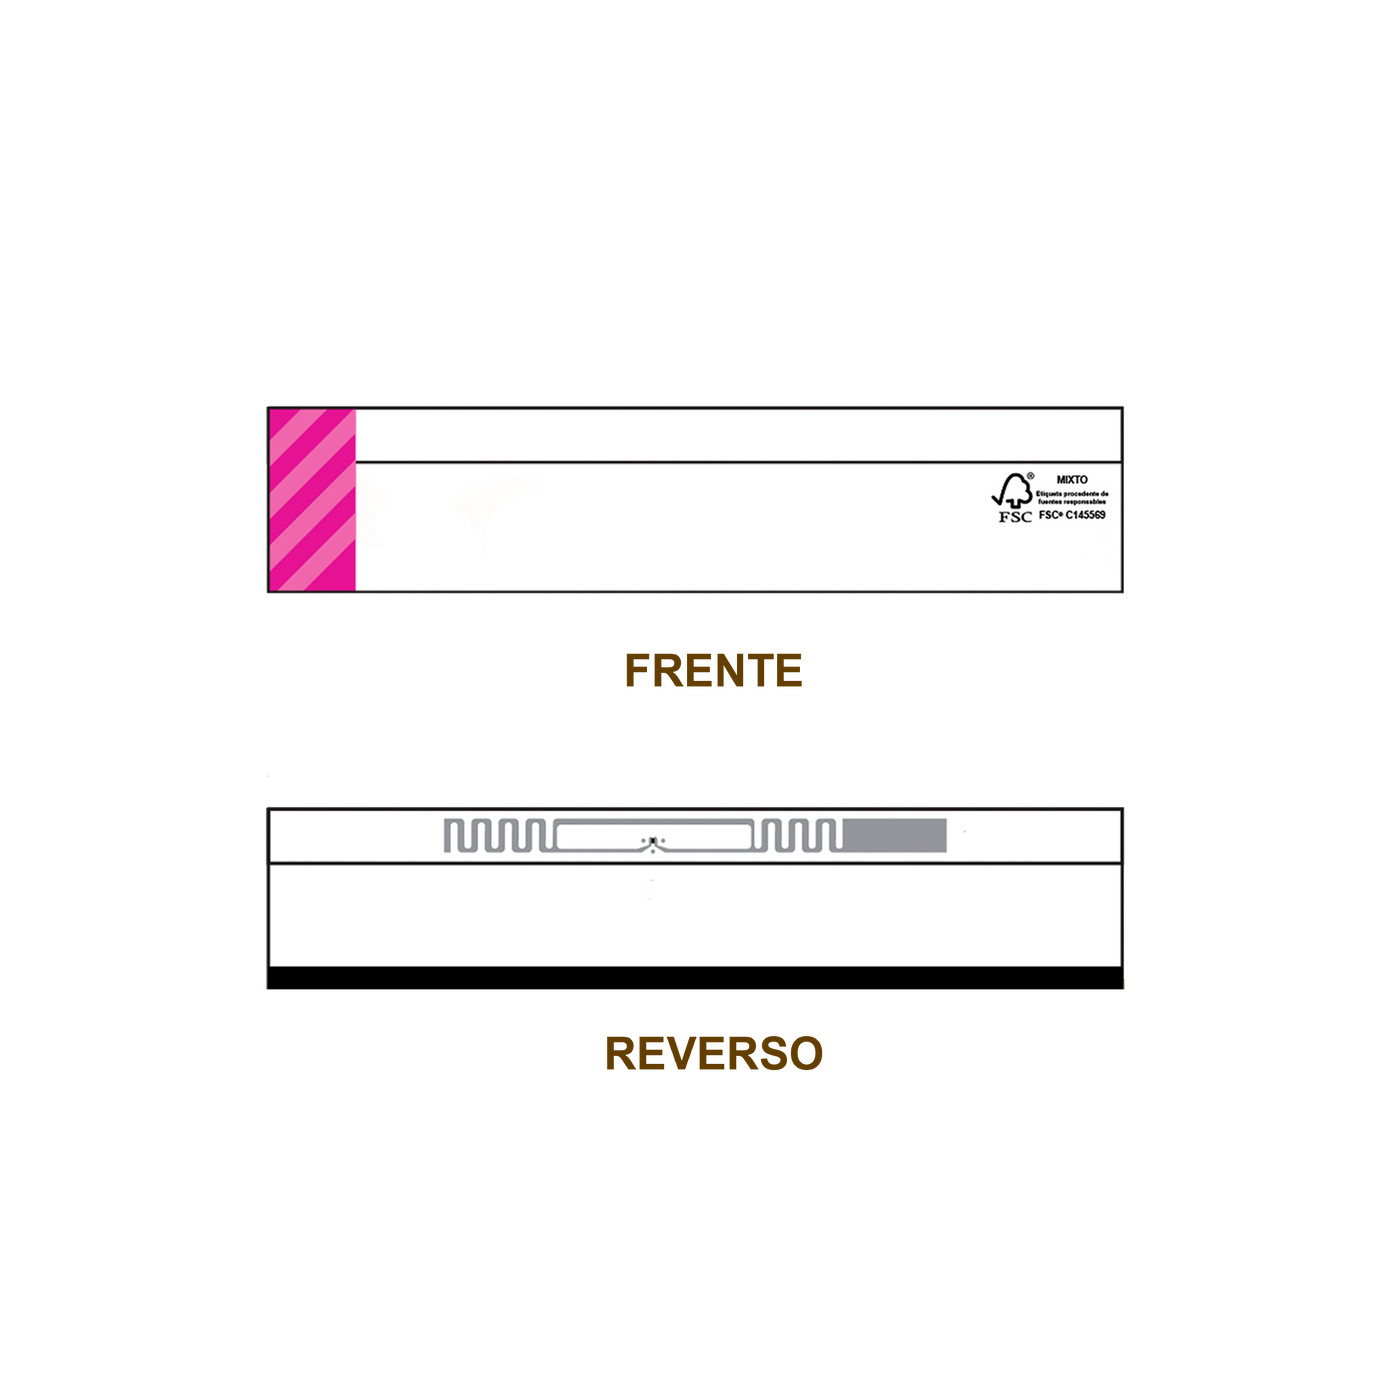 20 Millares de Etiqueta  RFID TTR adherible blanca con impresión rosa, 102mm x 22 mm con inlay, AD-161R6 de Avery Dennison, Clase 1 Gen 2, UHF 860-960 Mhz, EPC 128 Bit